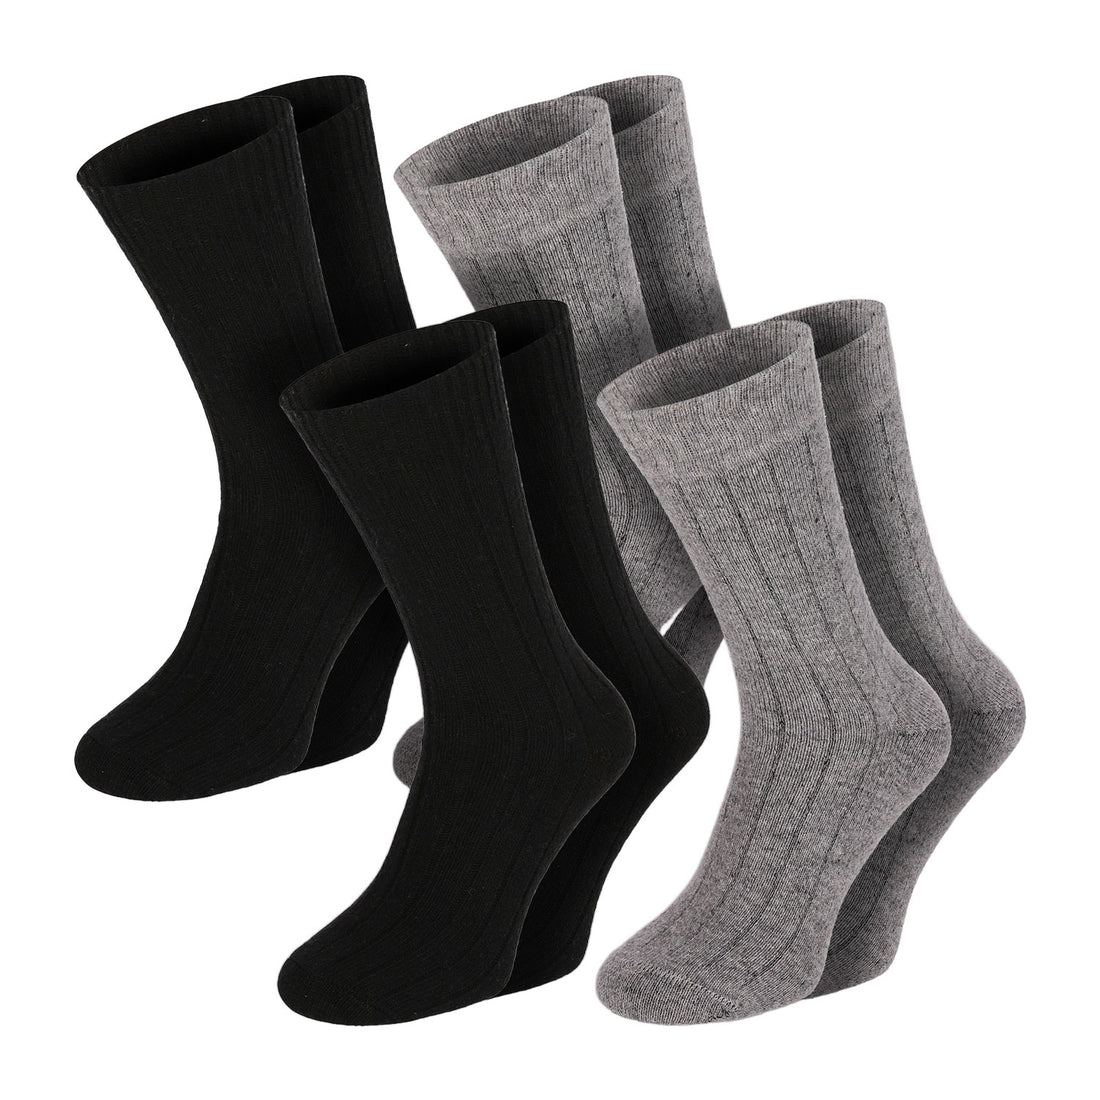 ChiliLifestyle Socken Winter Merino Wolle Damen Herren Warm 4 Paar